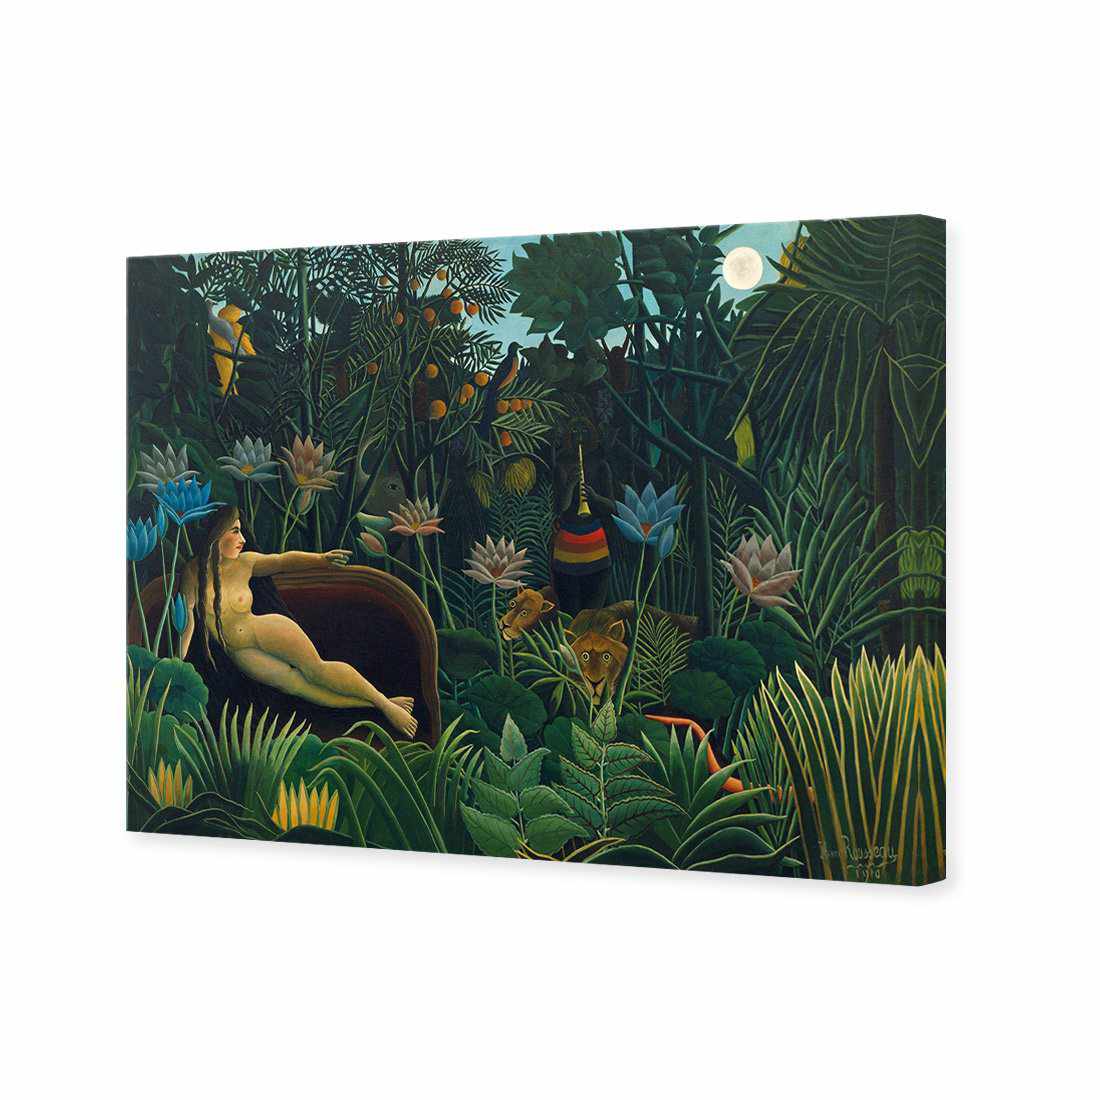 The Dream - Henri Rousseau Canvas Art-Canvas-Wall Art Designs-45x30cm-Canvas - No Frame-Wall Art Designs